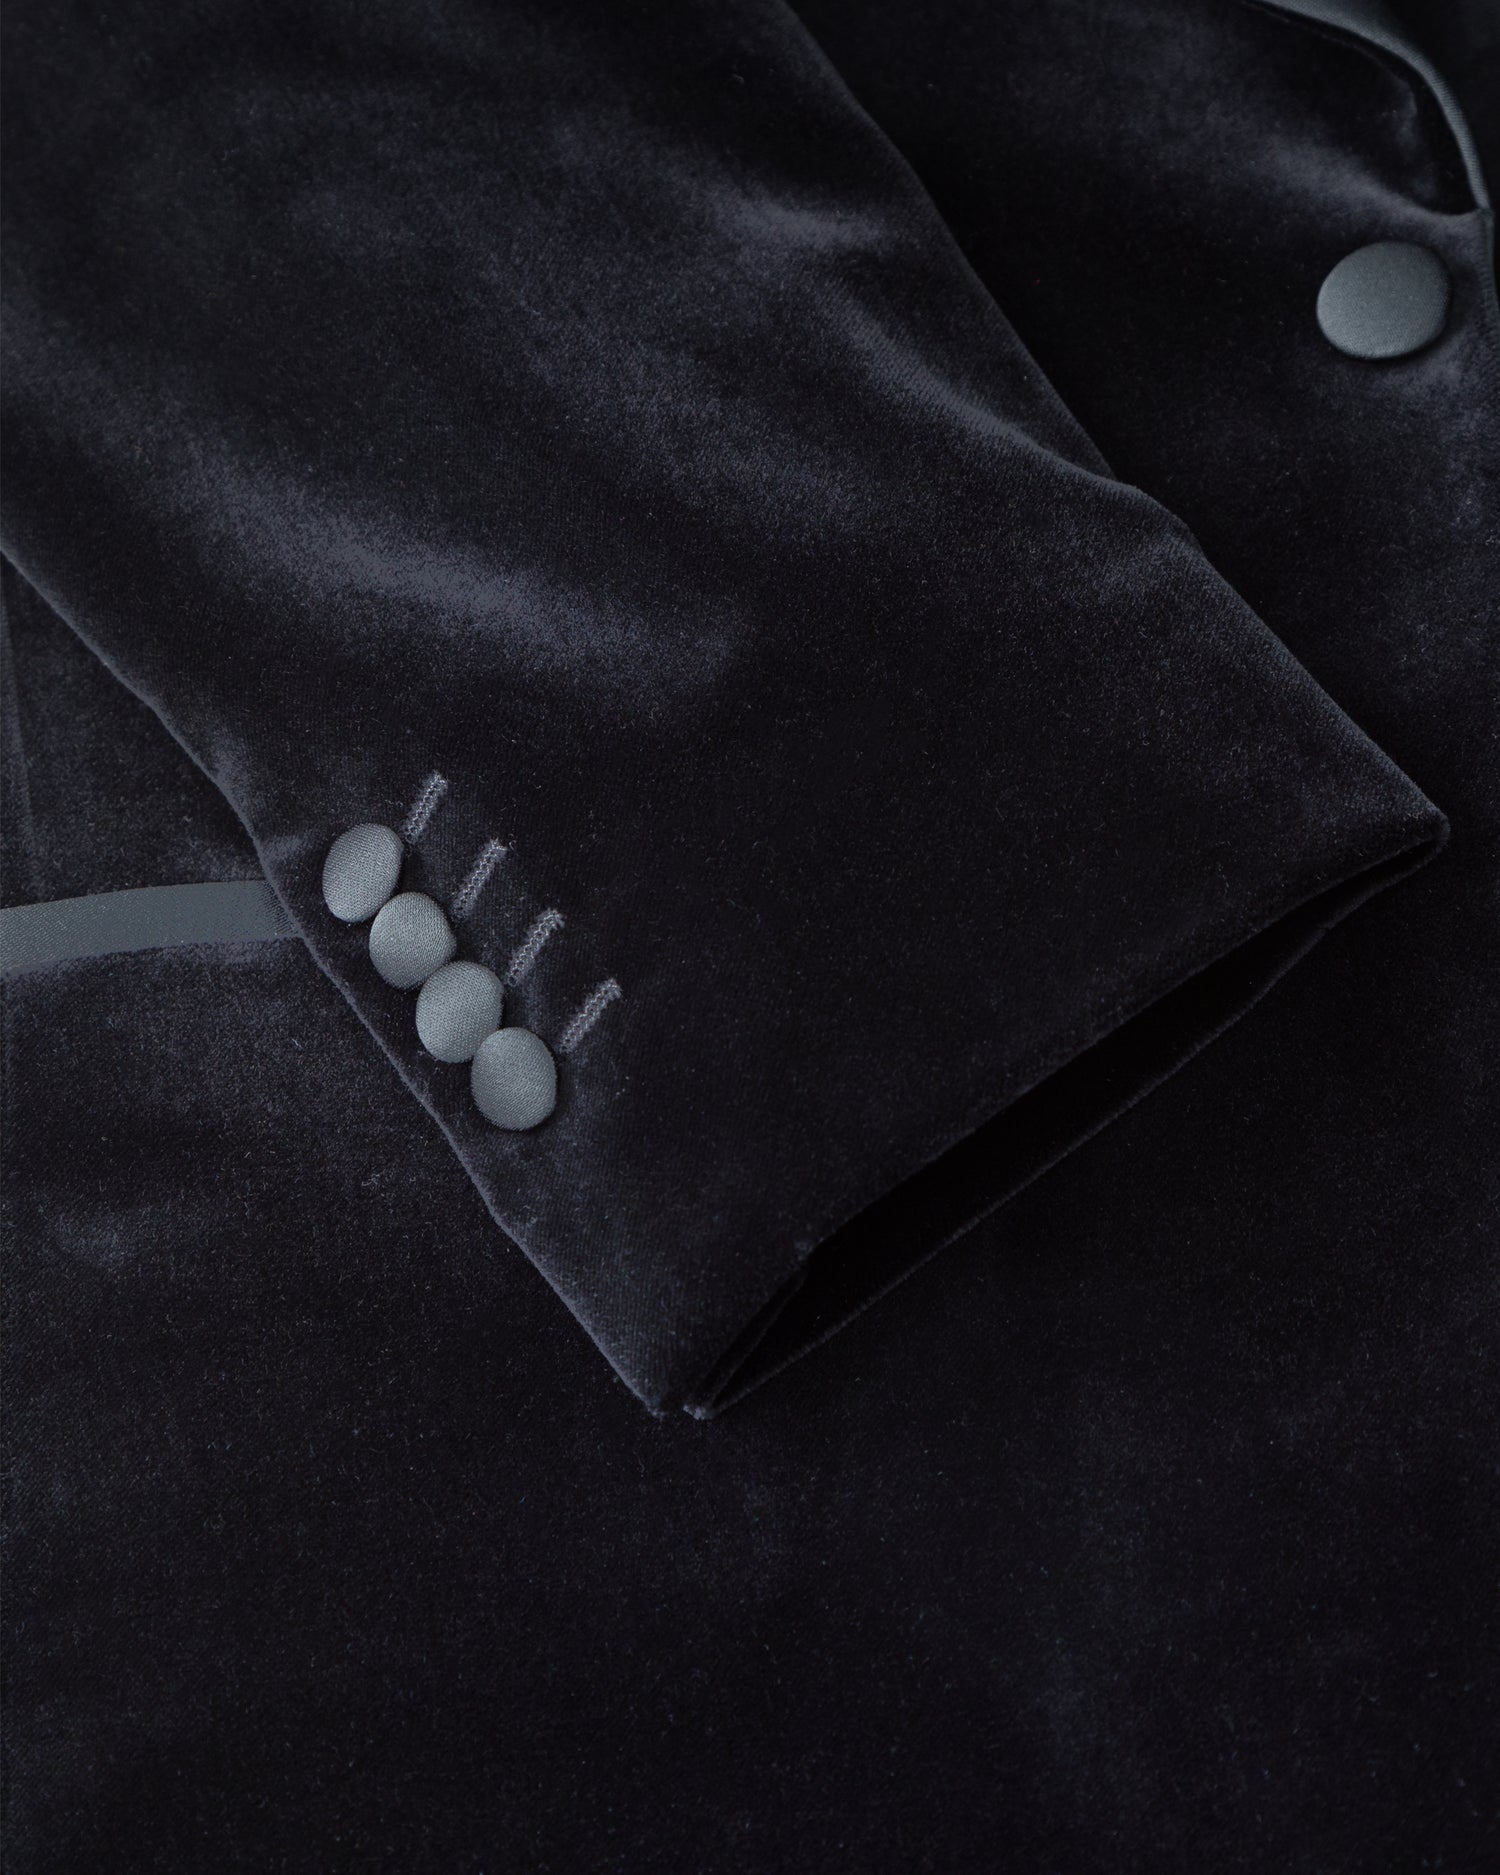 Black Velvet Tuxedo with shawl collar (8555048337738)